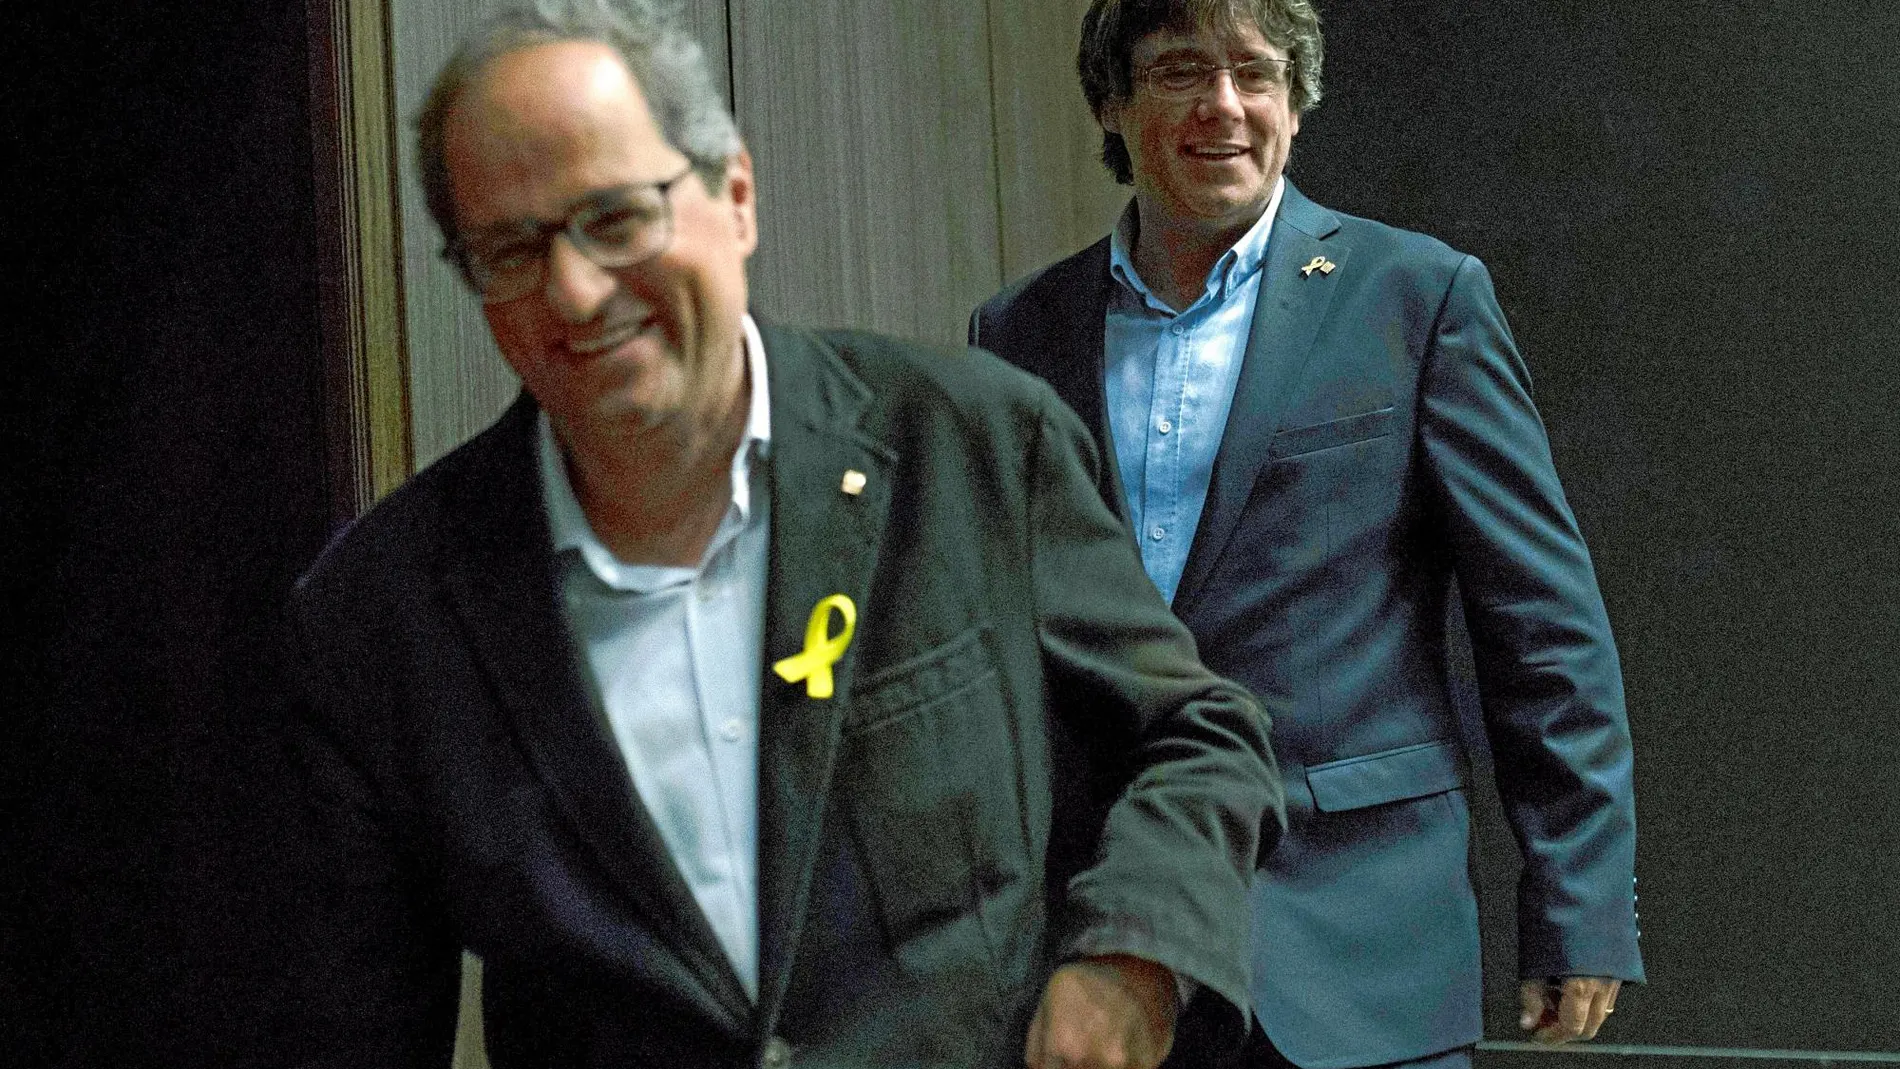 El actual president de la Generalitat, Quim Torra, junto con su antecesor, Carles Puidgemont